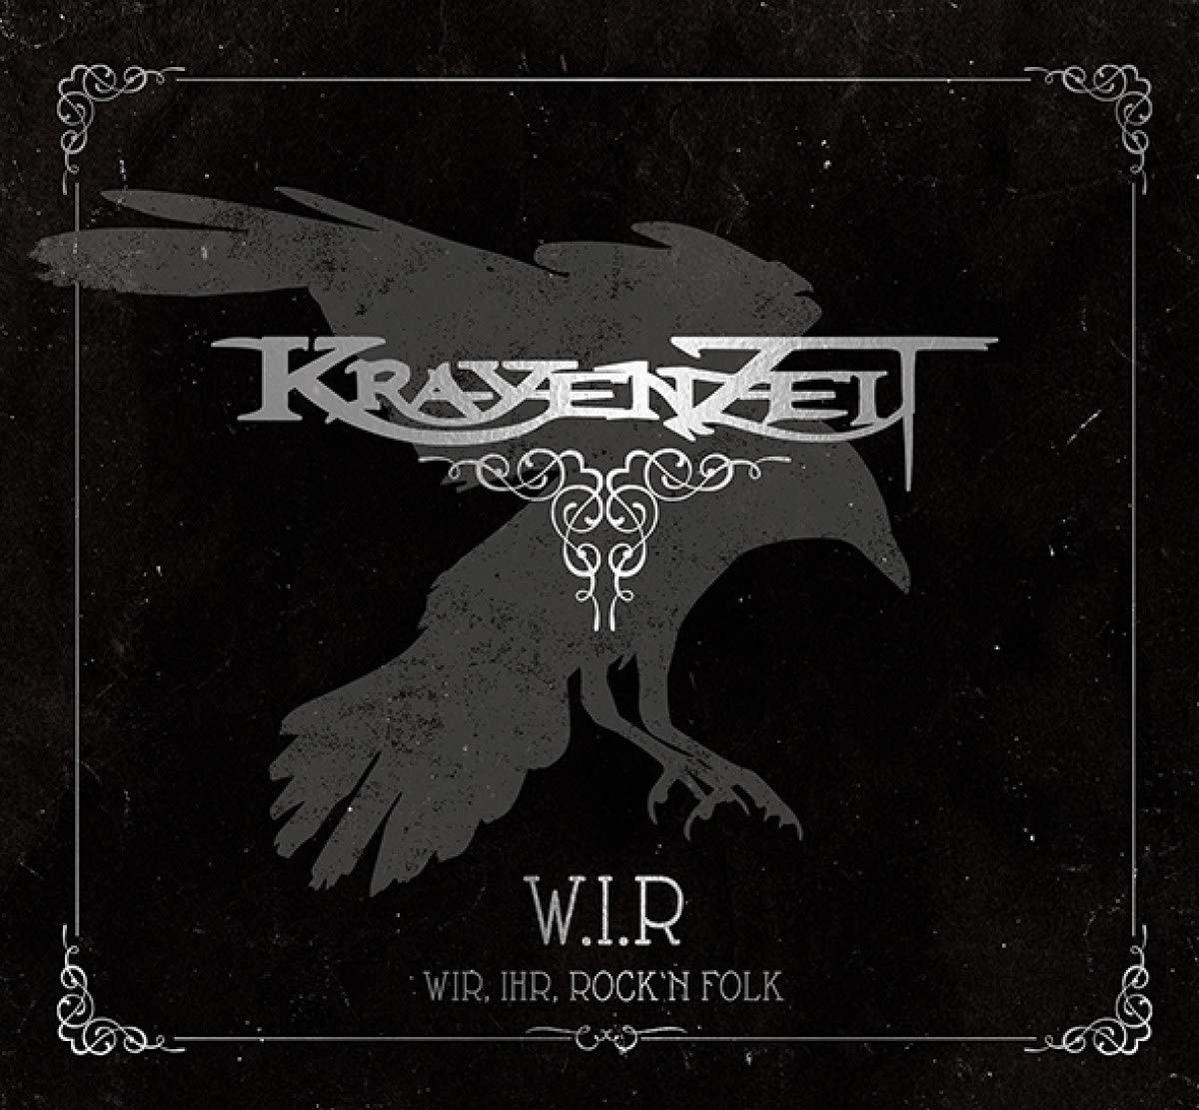 Krayenzeit - W.I.R.-Wir,Ihr,Rock \'n Folk (CD) 